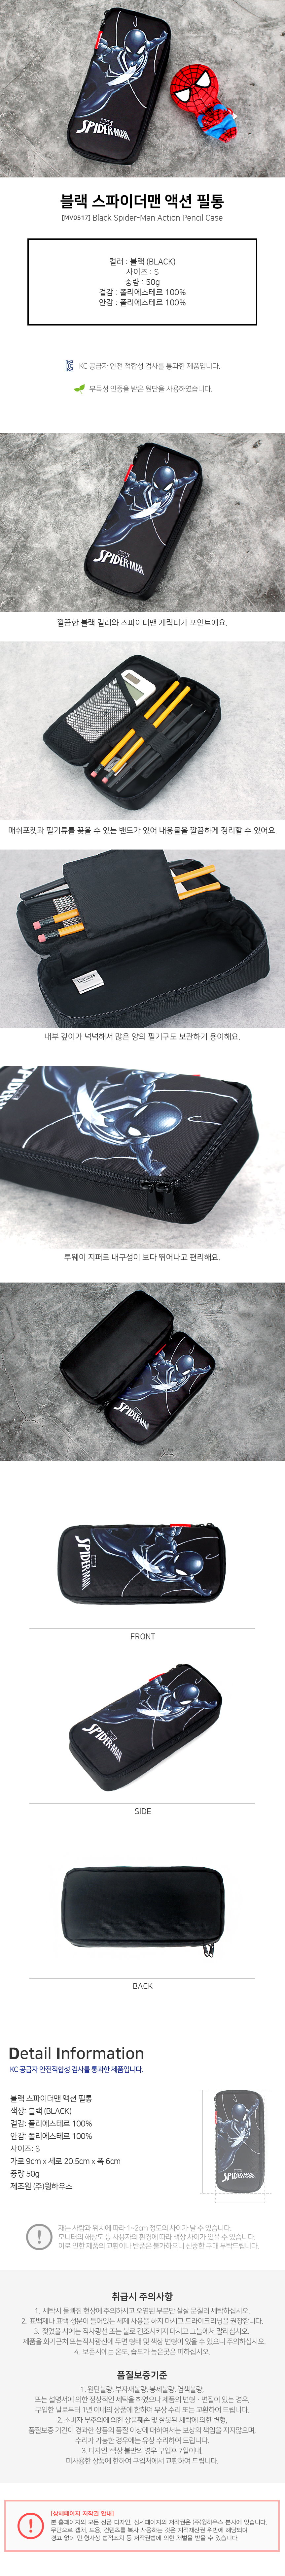 韓國winghouse MARVEL系列筆袋- 蜘蛛人